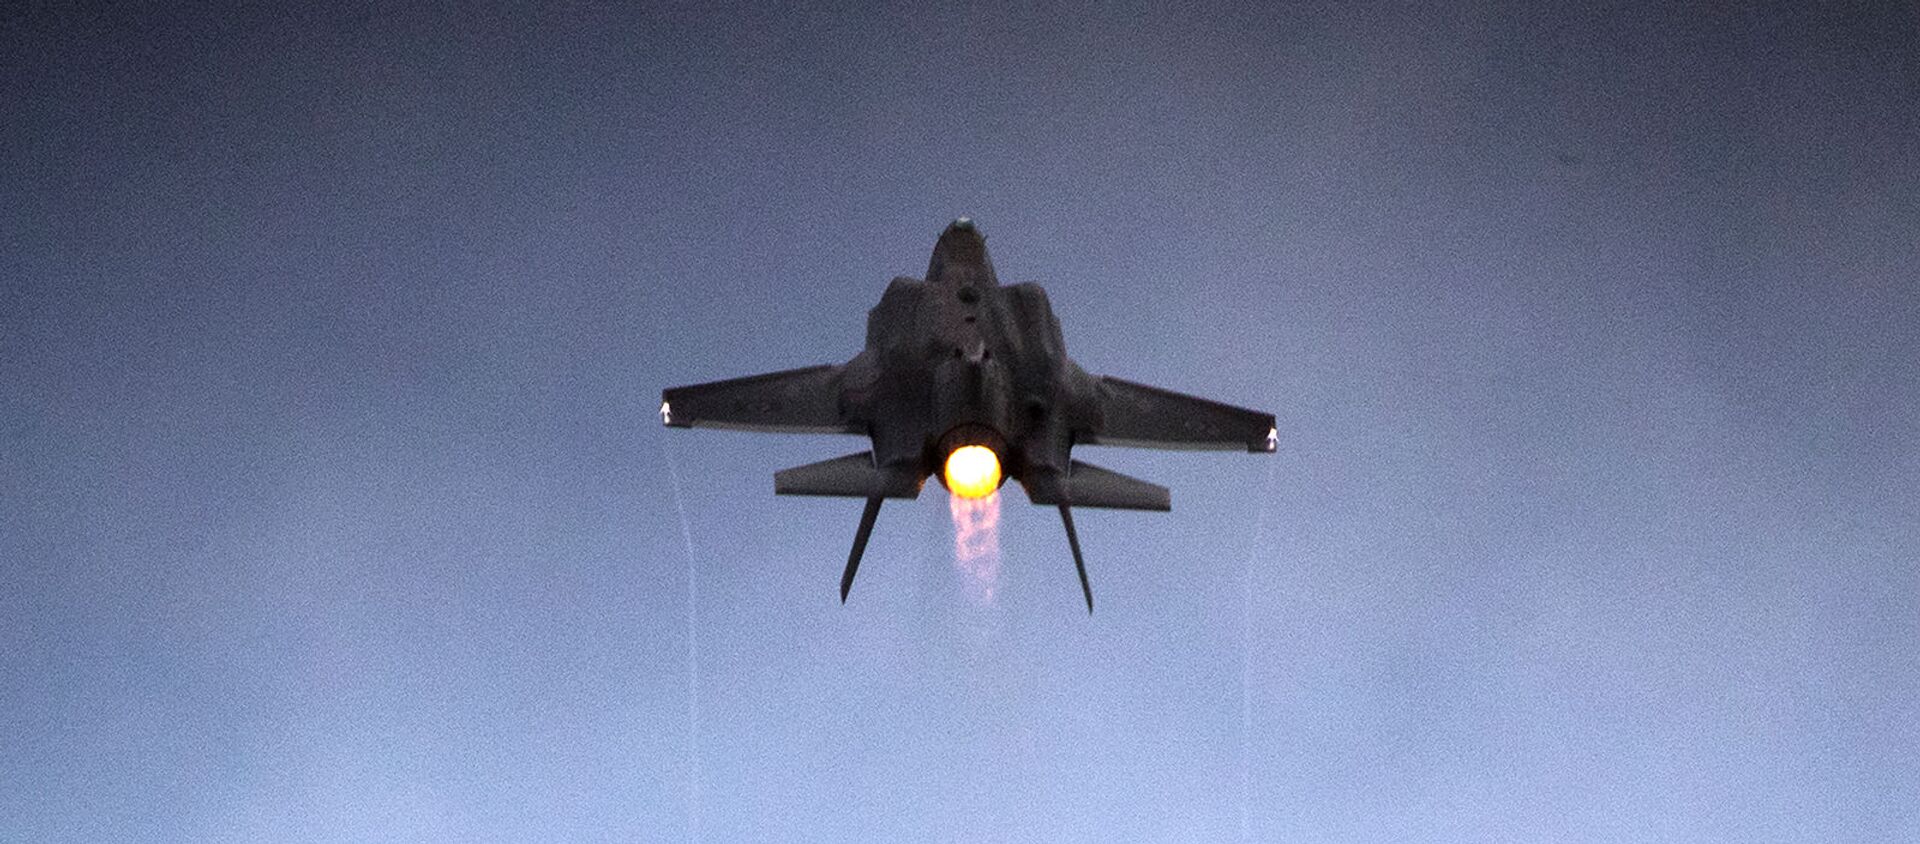 Истребитель F-35 Lightning II израильских ВВС на показательных выступлениях в военно-воздушной базе Хатцерим (27 декабря 2017). Пустыне Негев, Израиль - Sputnik საქართველო, 1920, 29.09.2021